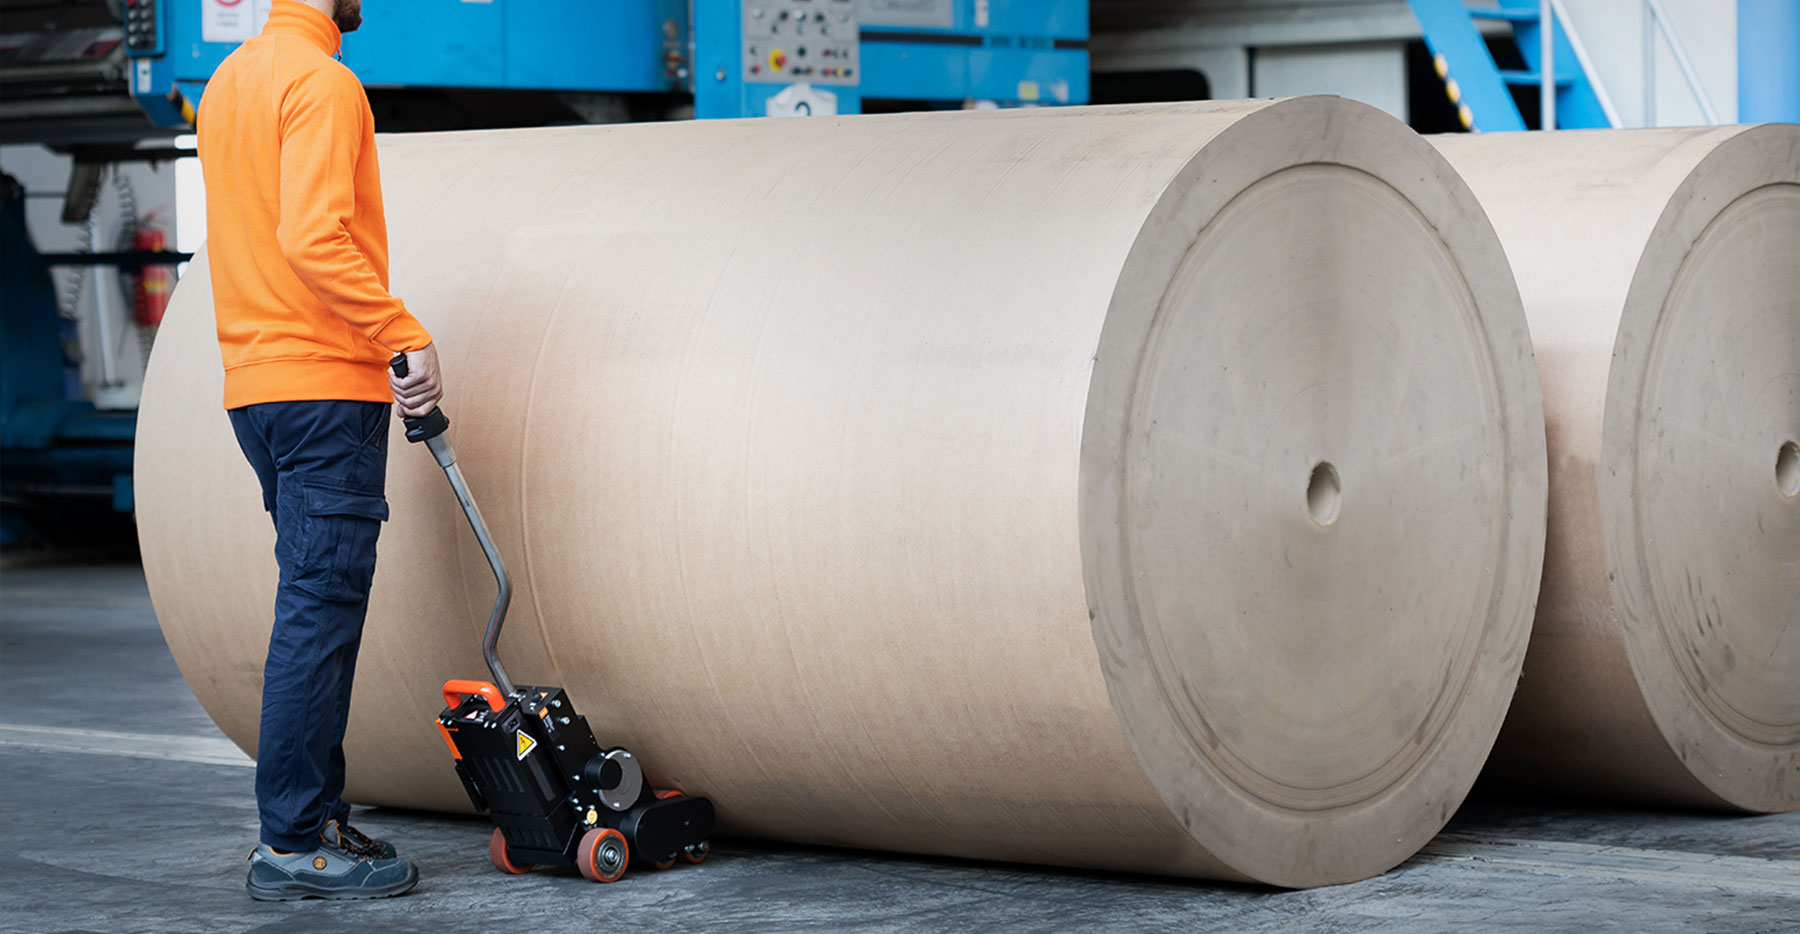 bobina de papel industrial renova de 3,200 kg en semilleria kp.es